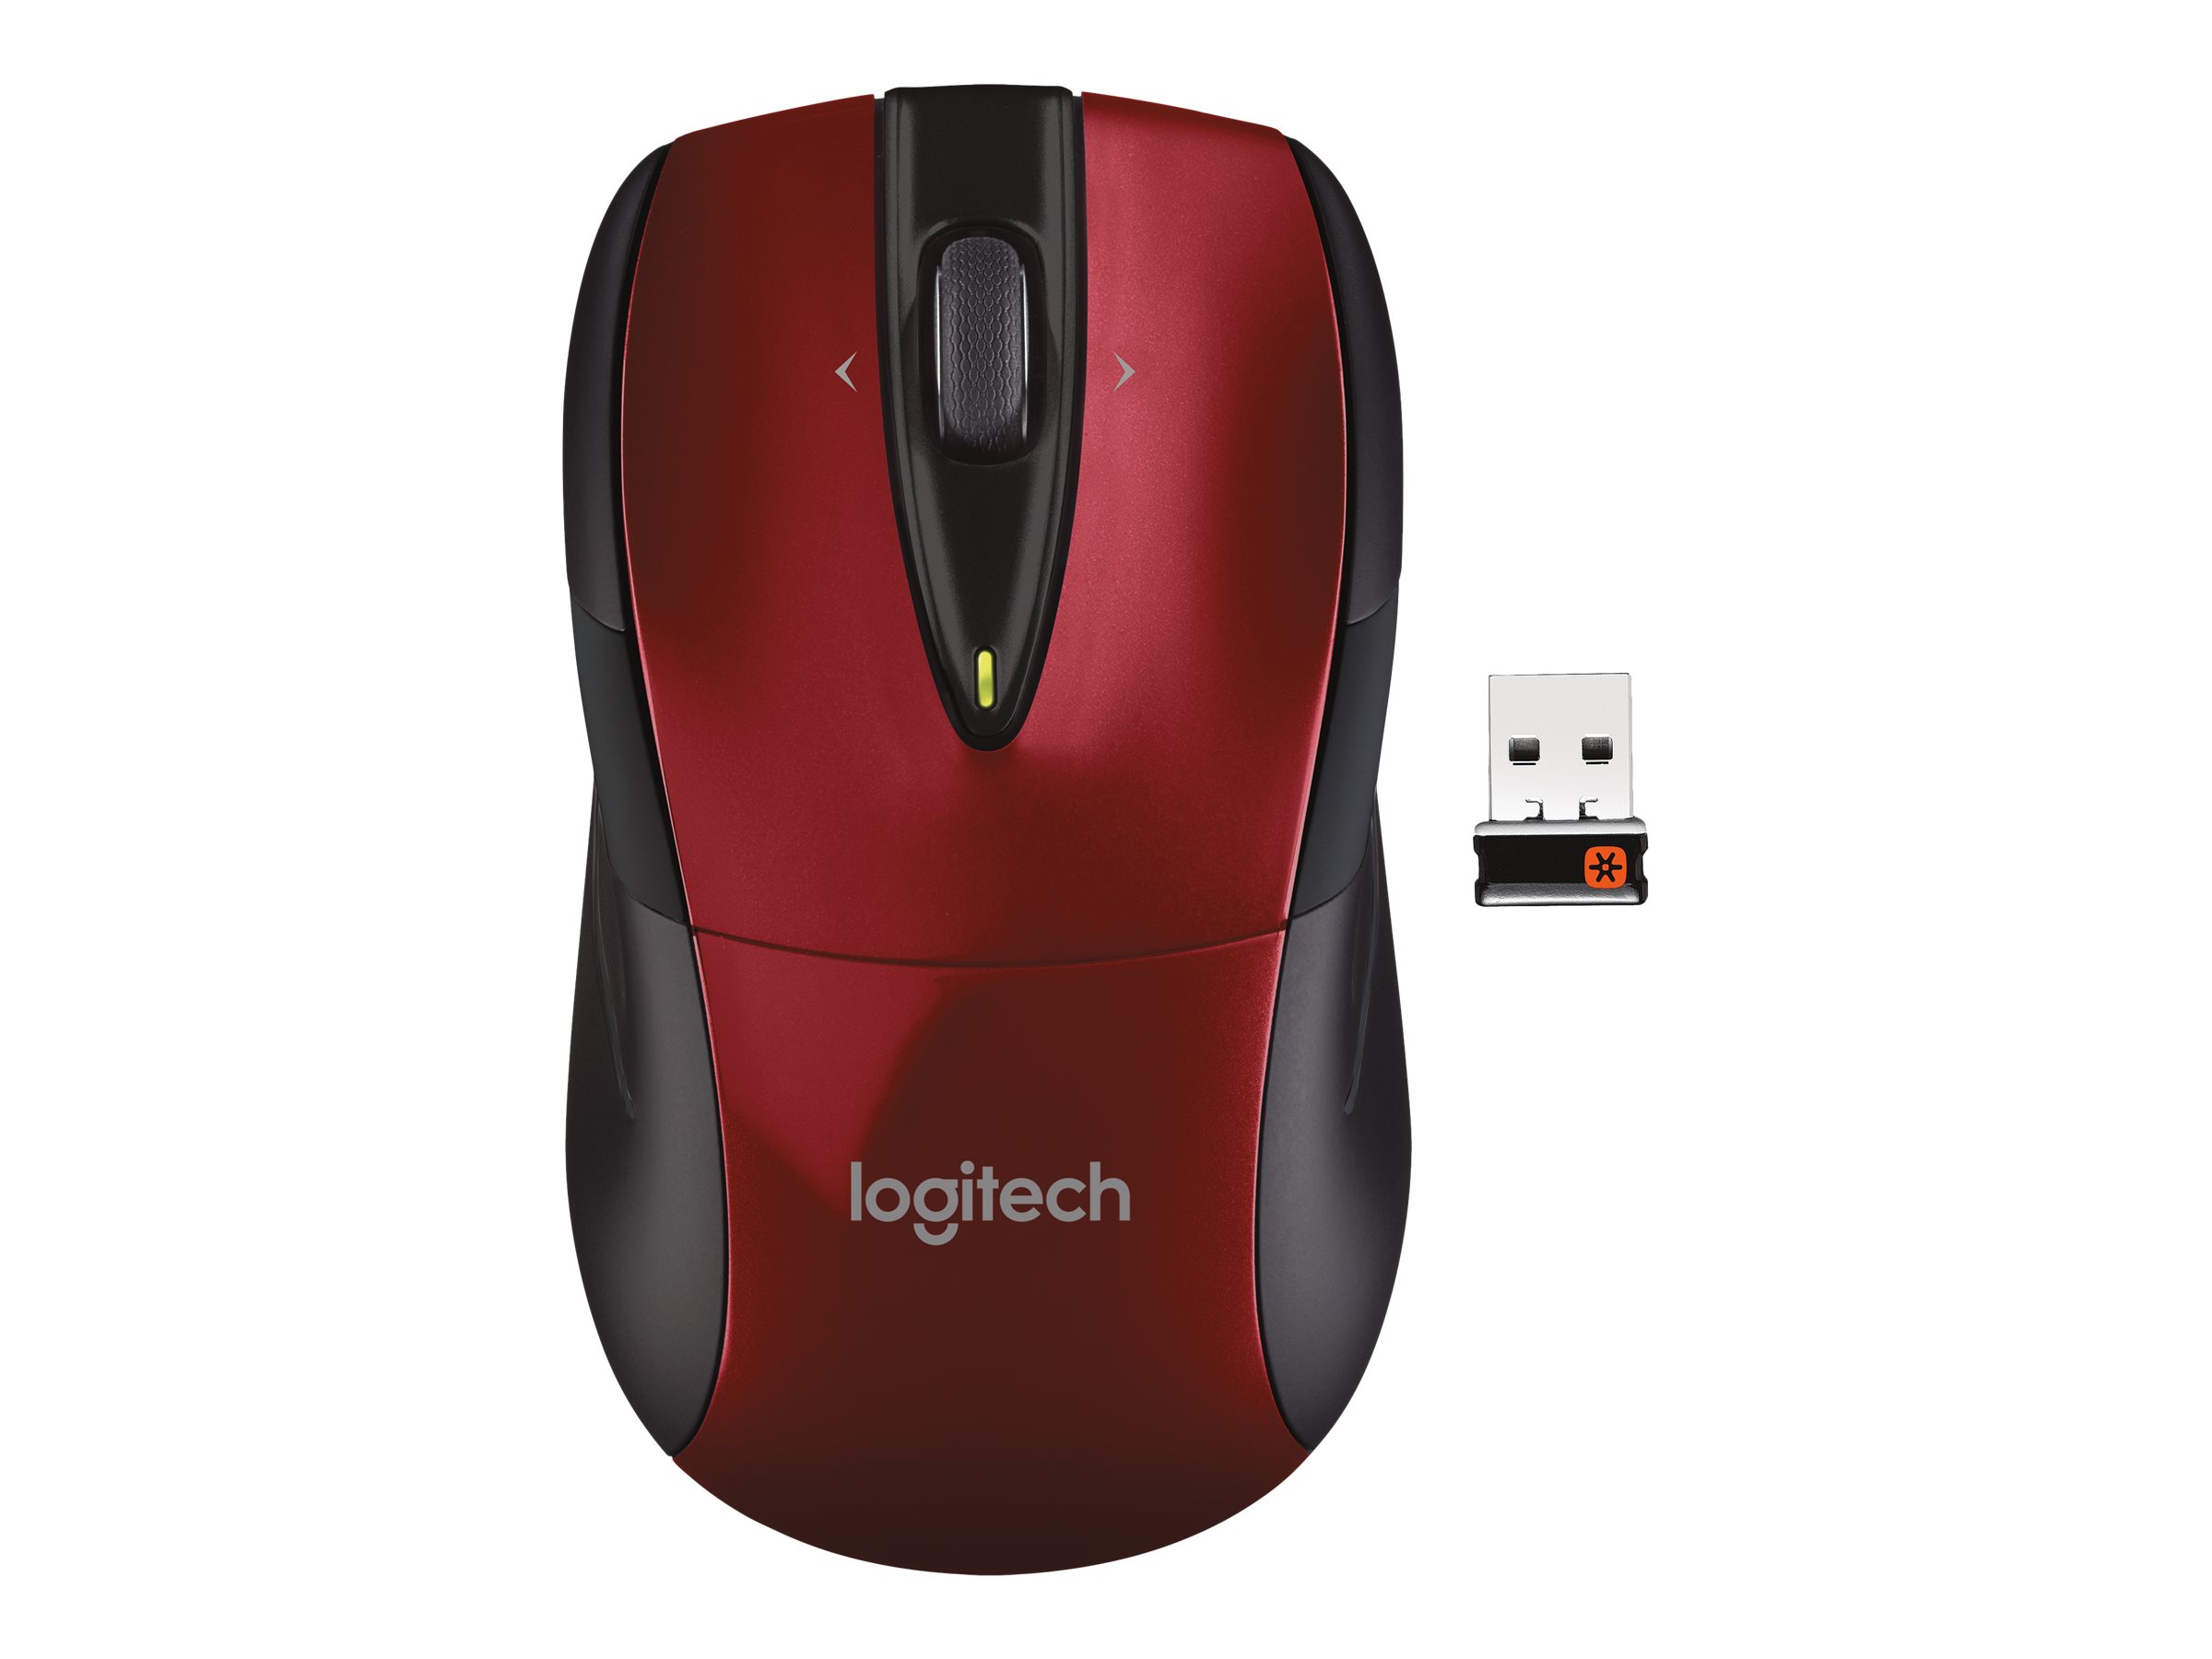 Logitech M525 Mouse | www.shidirect.com